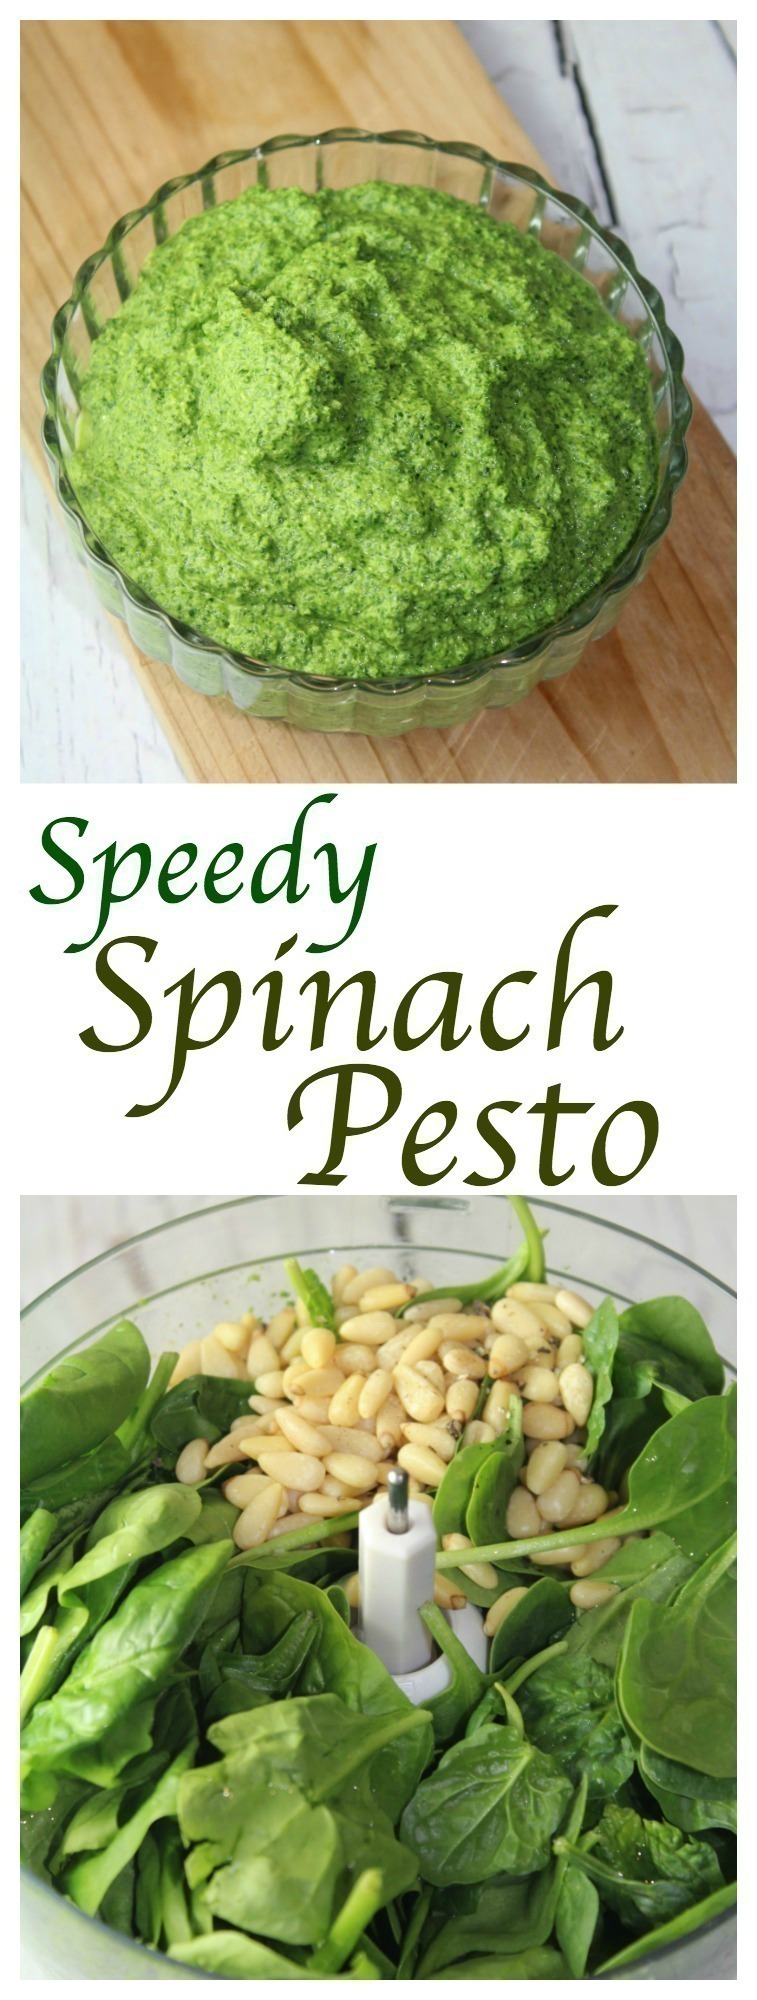 Speedy Spinach Pesto